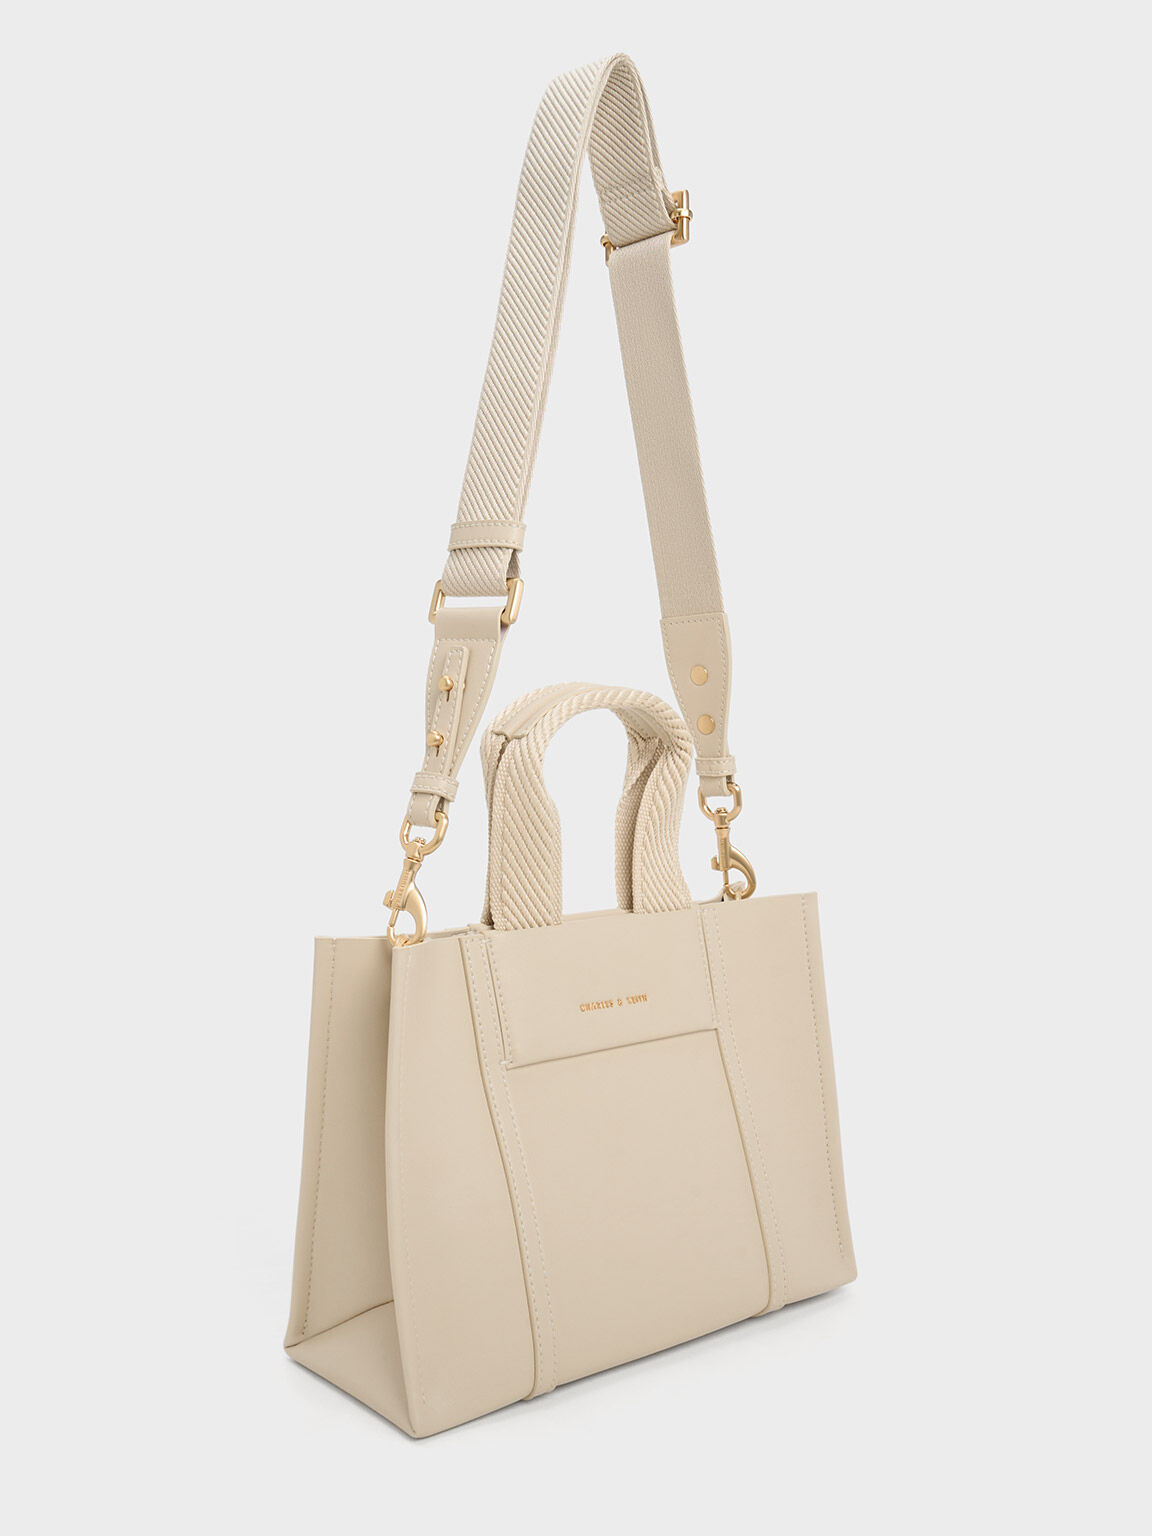 Buy Tan Pu Leather Tote Bag (Handbag) for INR1749.50 | Biba India